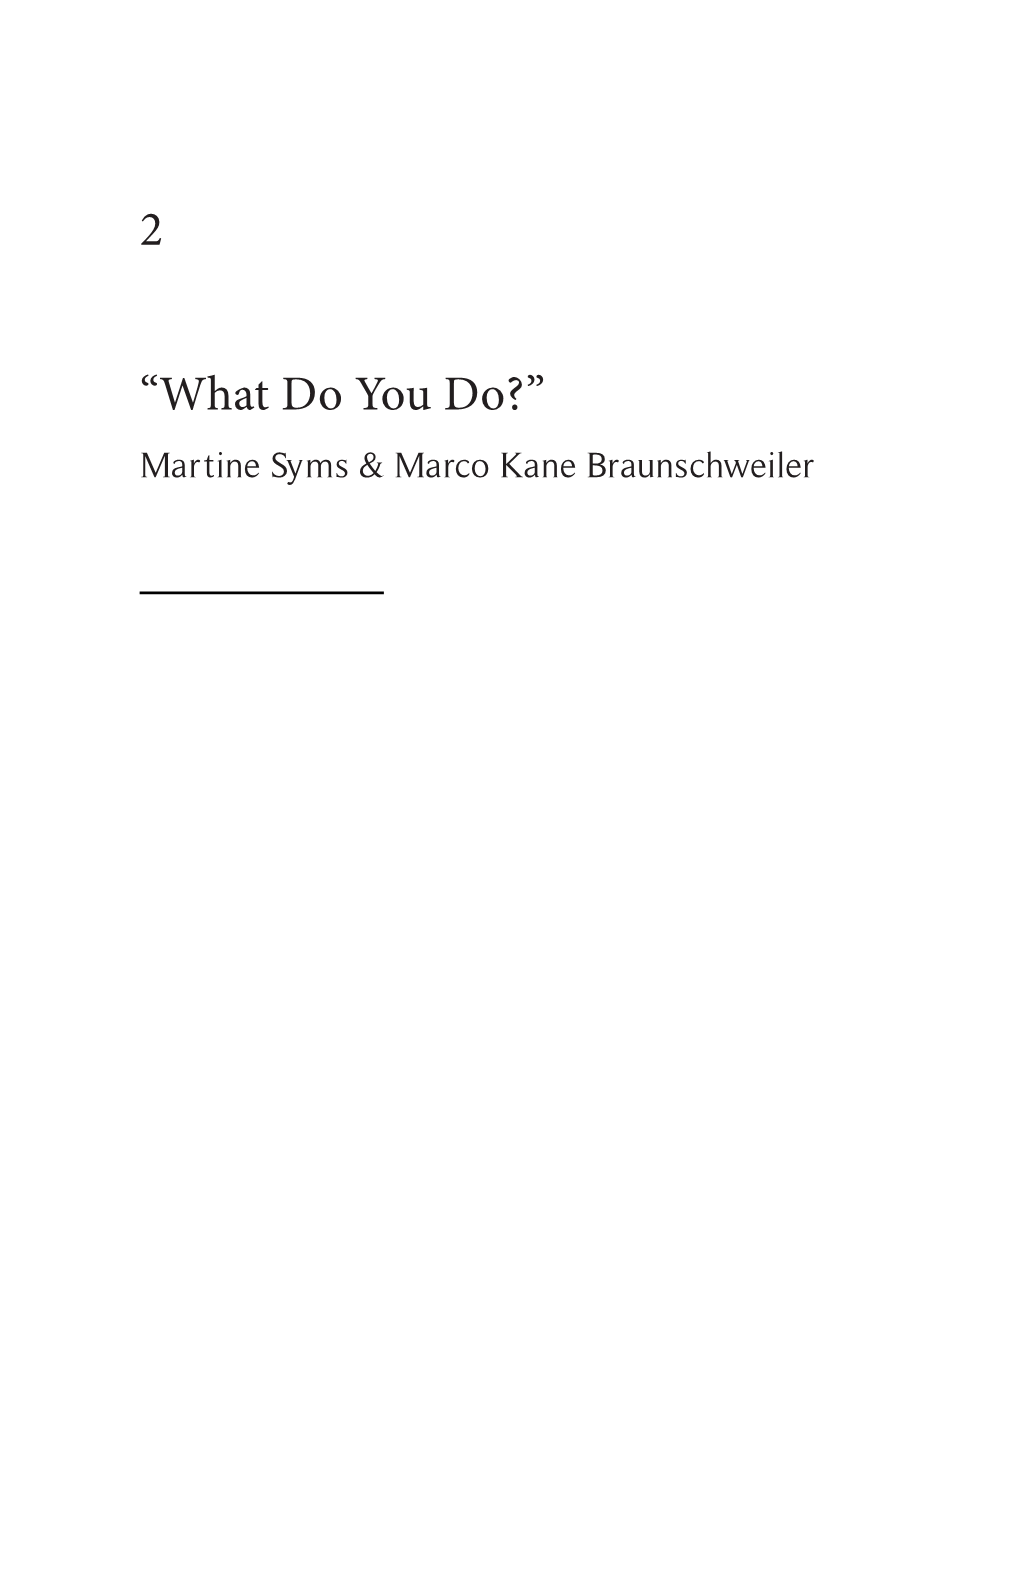 What Do You Do?” Martine Syms & Marco Kane Braunschweiler “What Do You Do?”